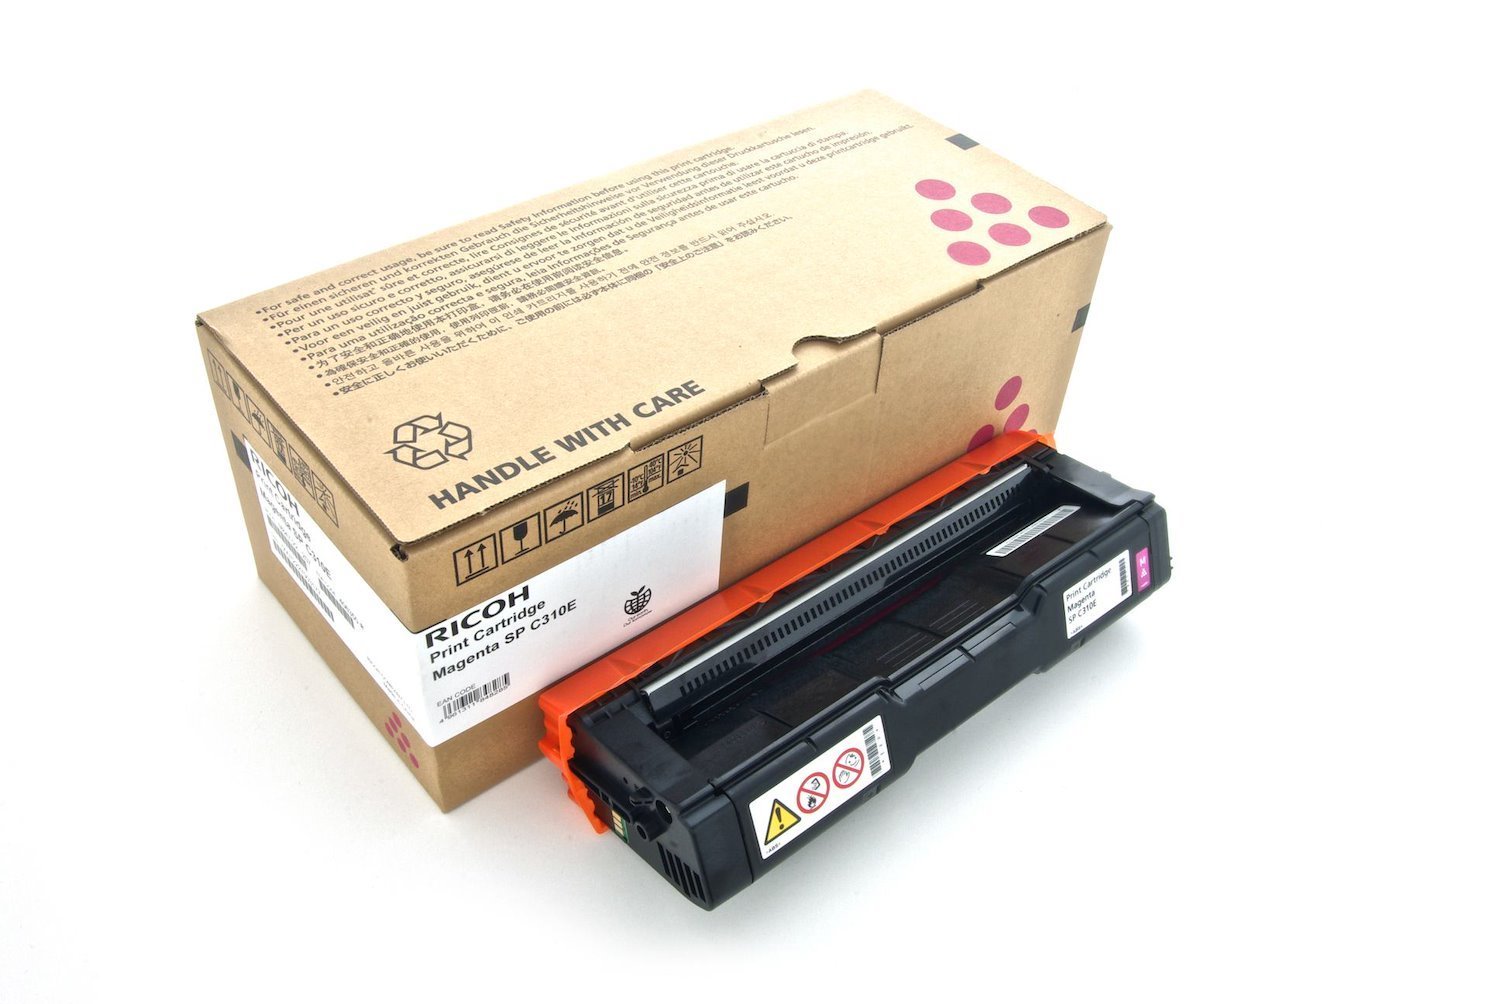 Ricoh 406350 Original Laser Toner Cartridge - Magenta Pack